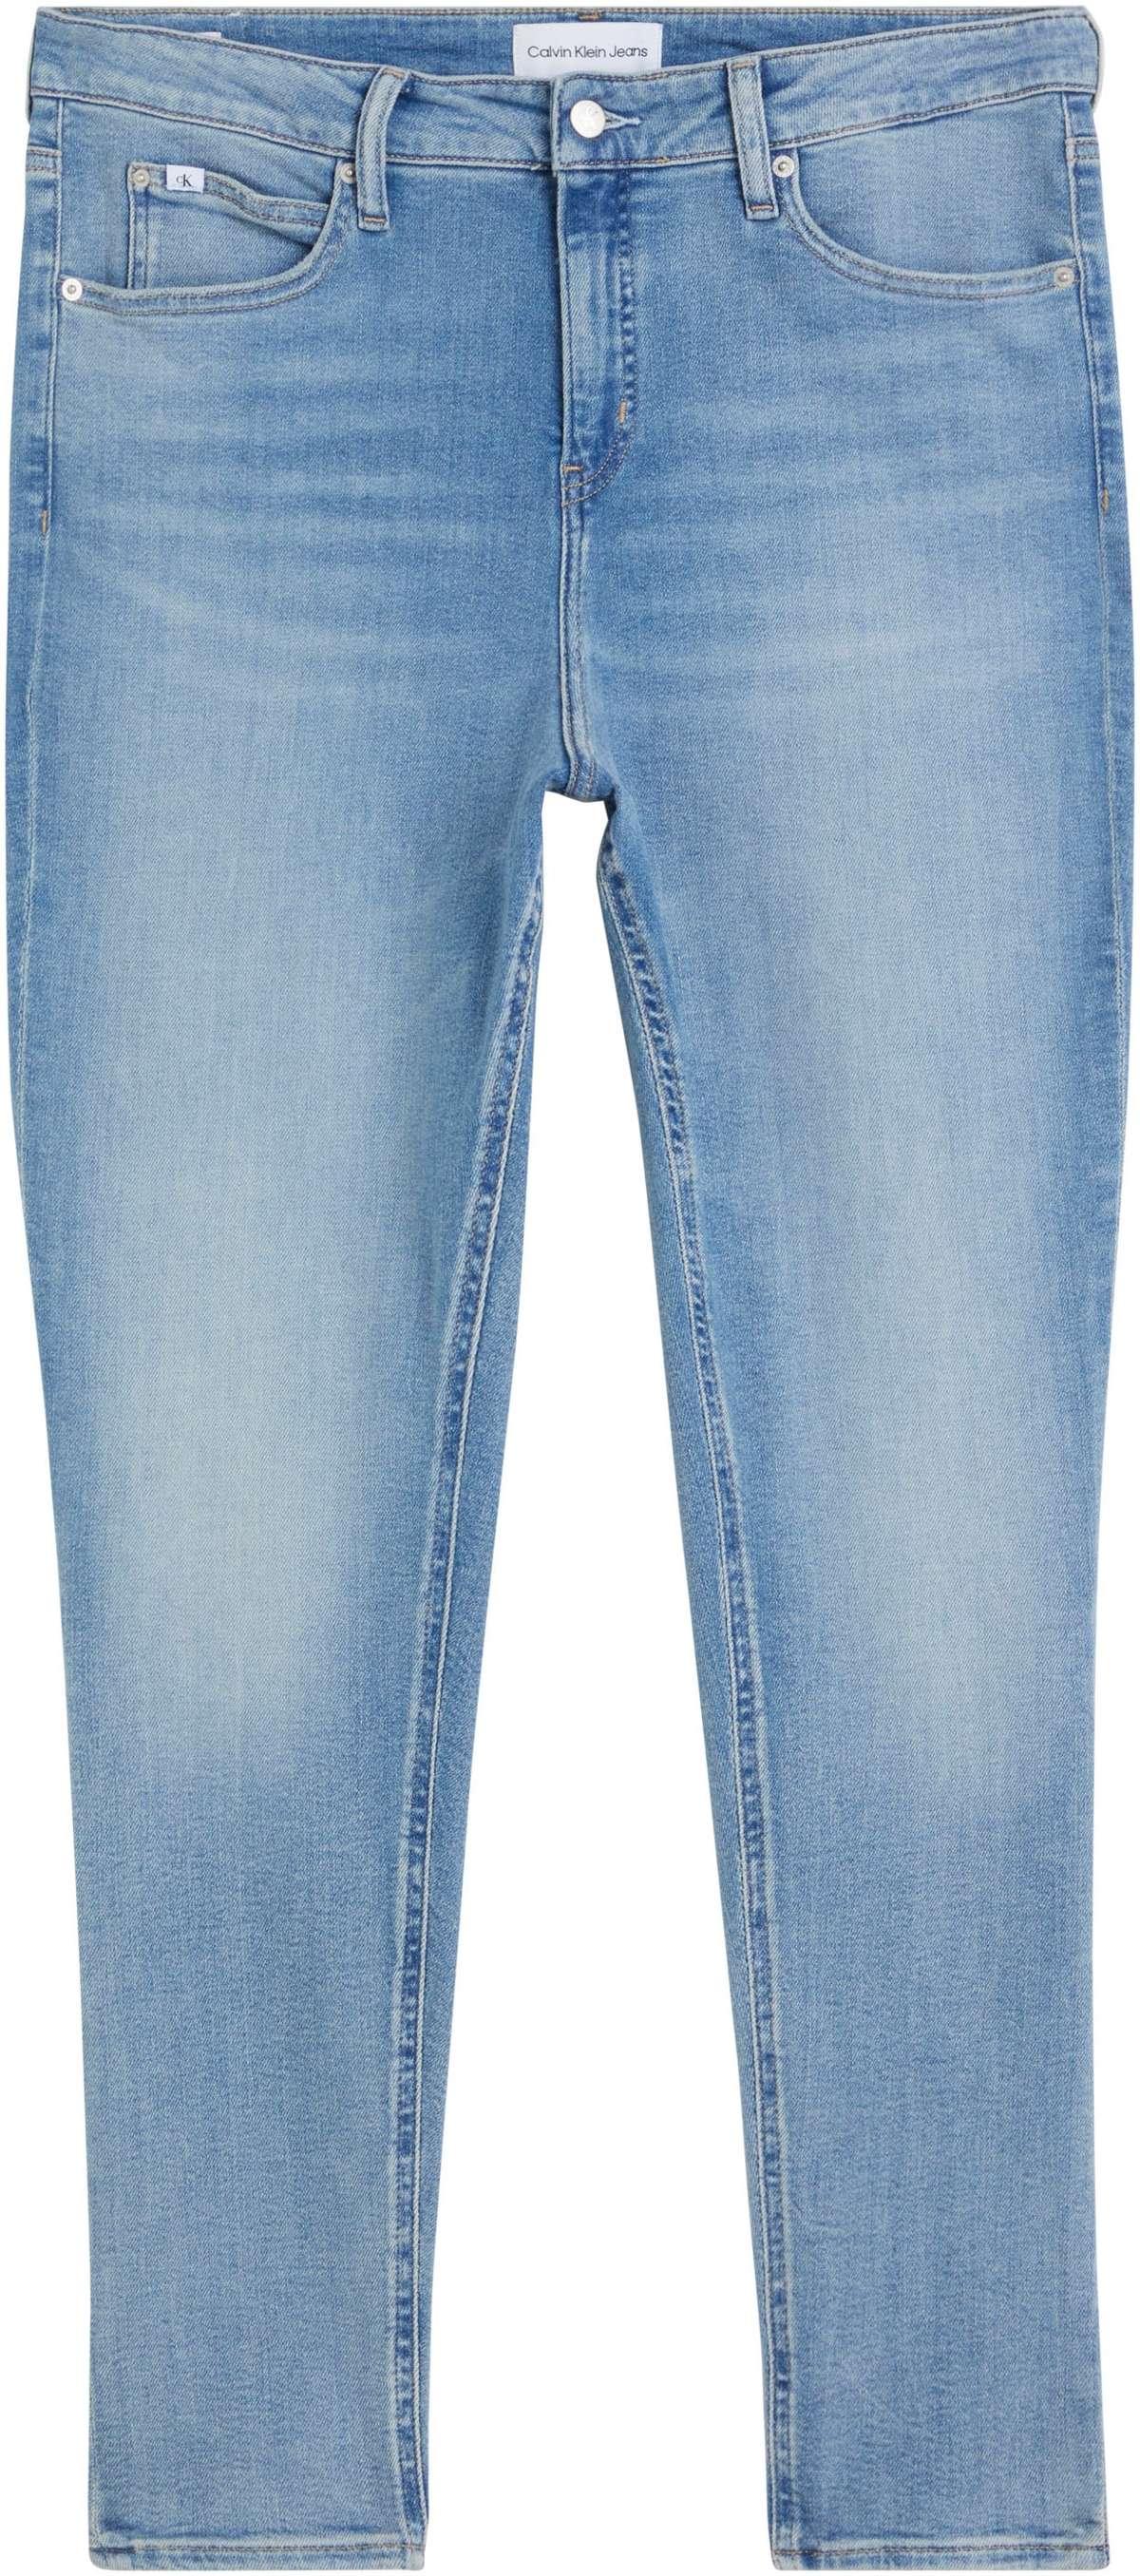 Джинсы скинни, джинсы предлагаются разной ширины.